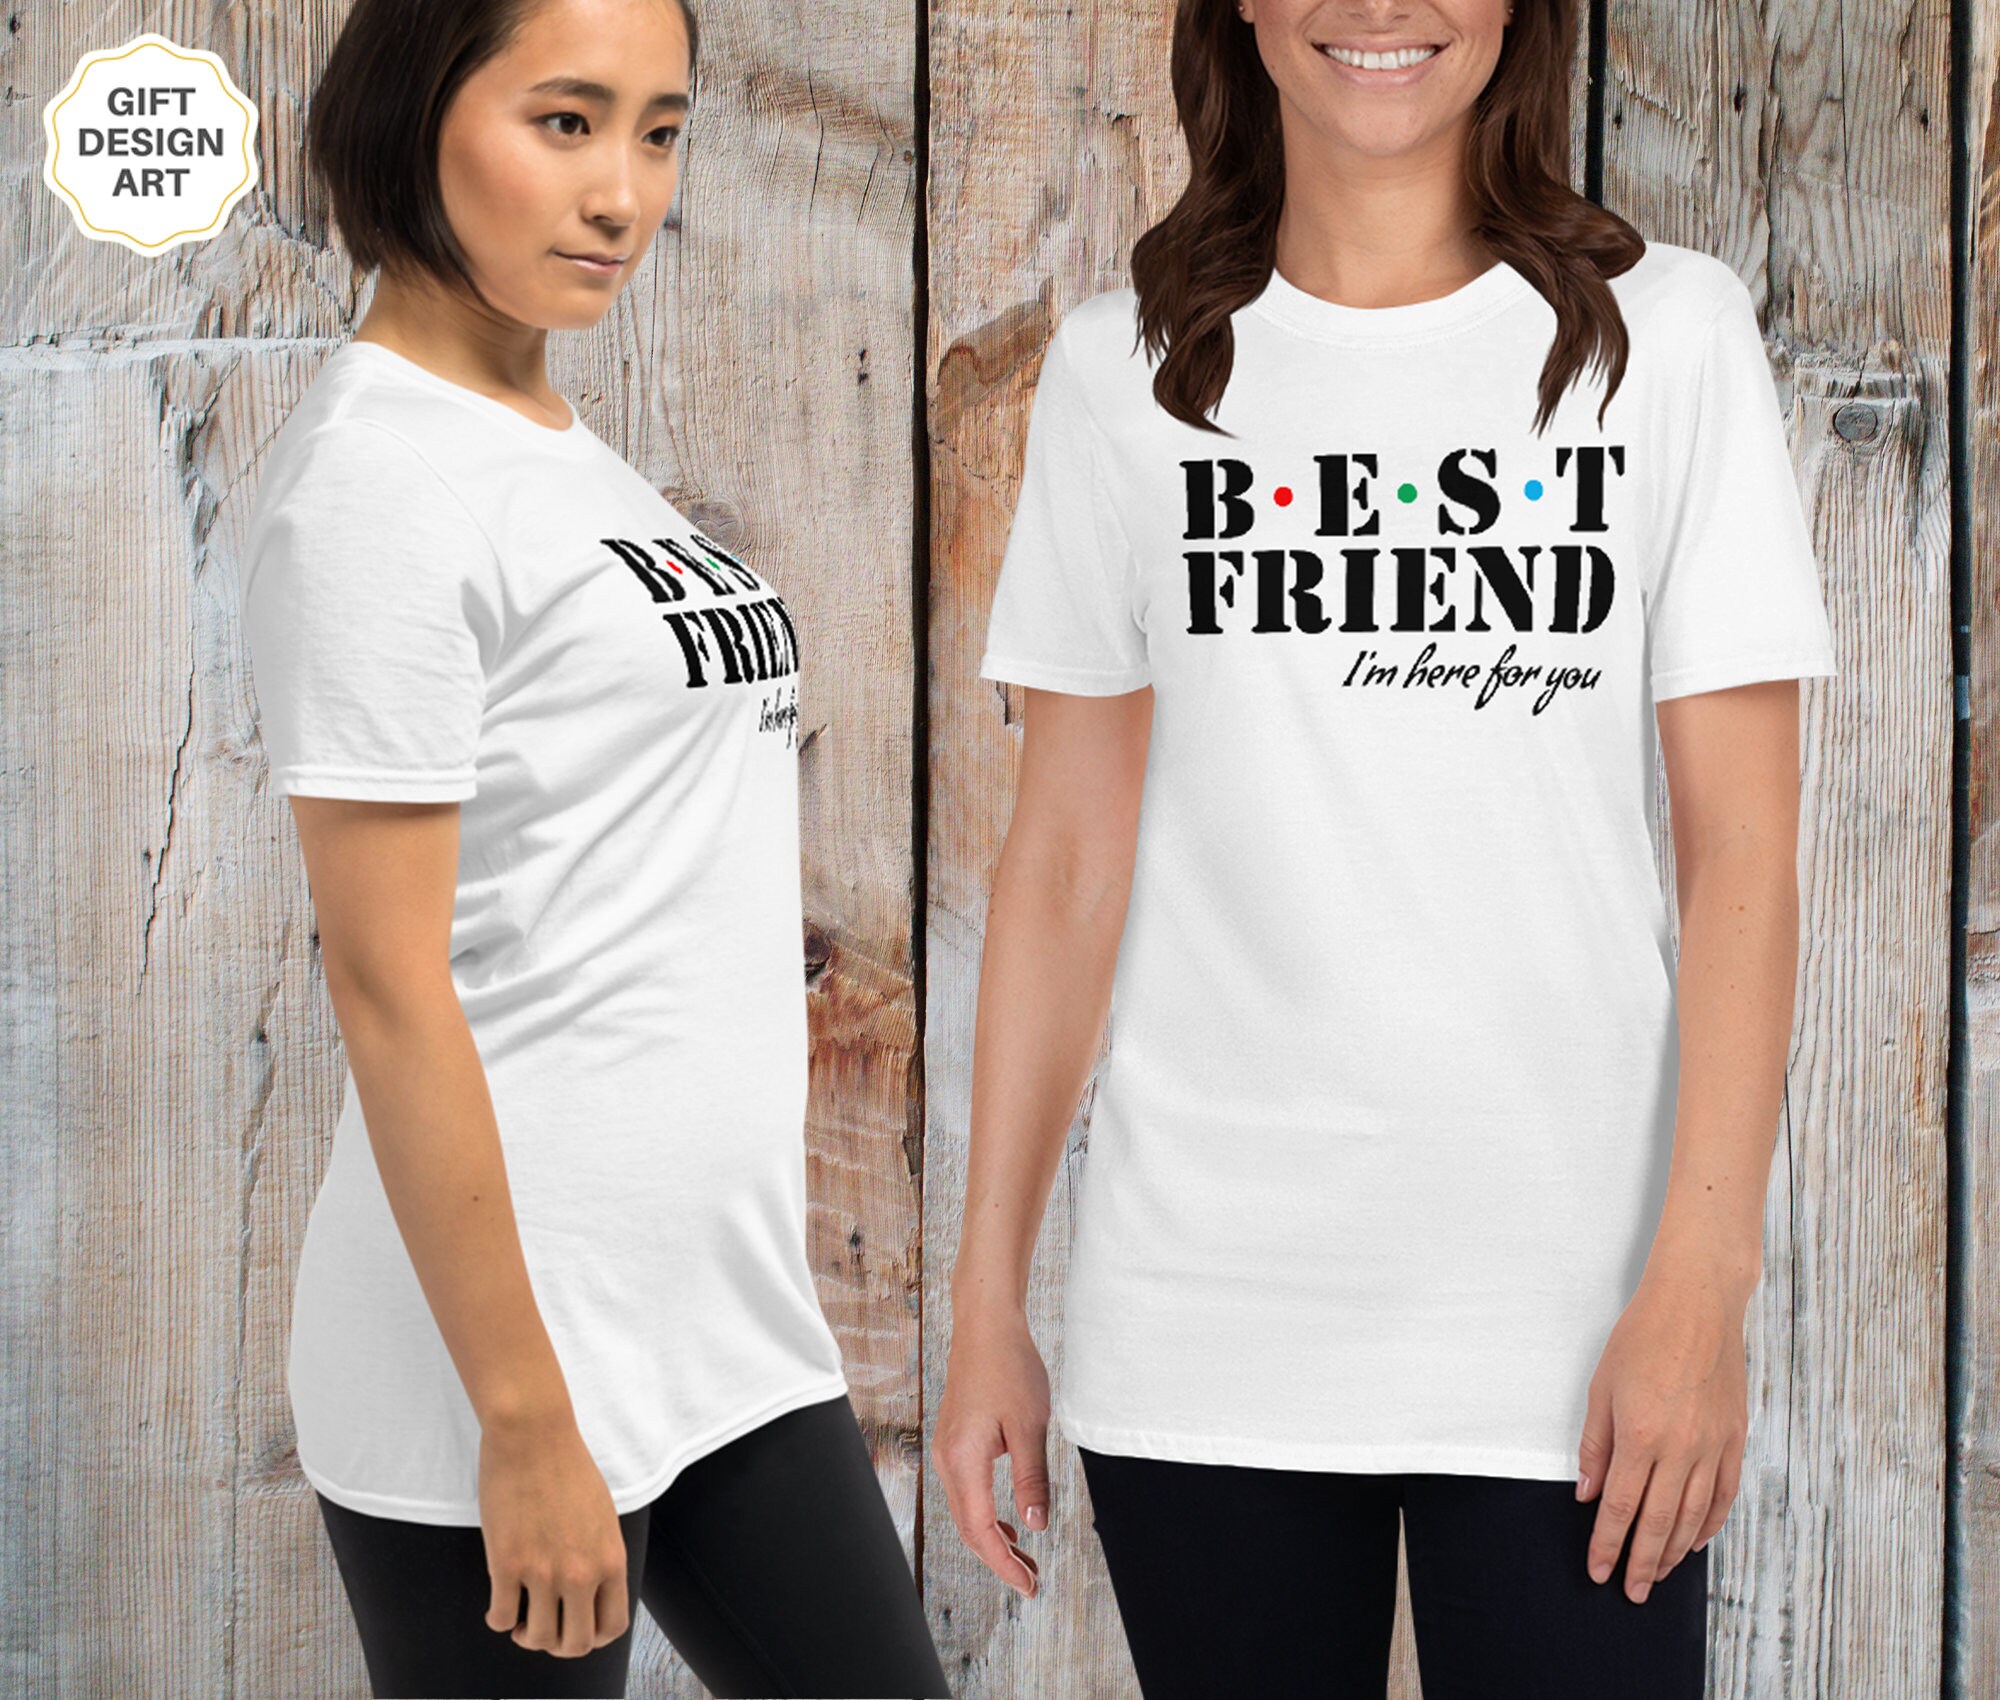 Best Friend Shirts Best Friend Shirts for 2 Best Friends - Etsy UK